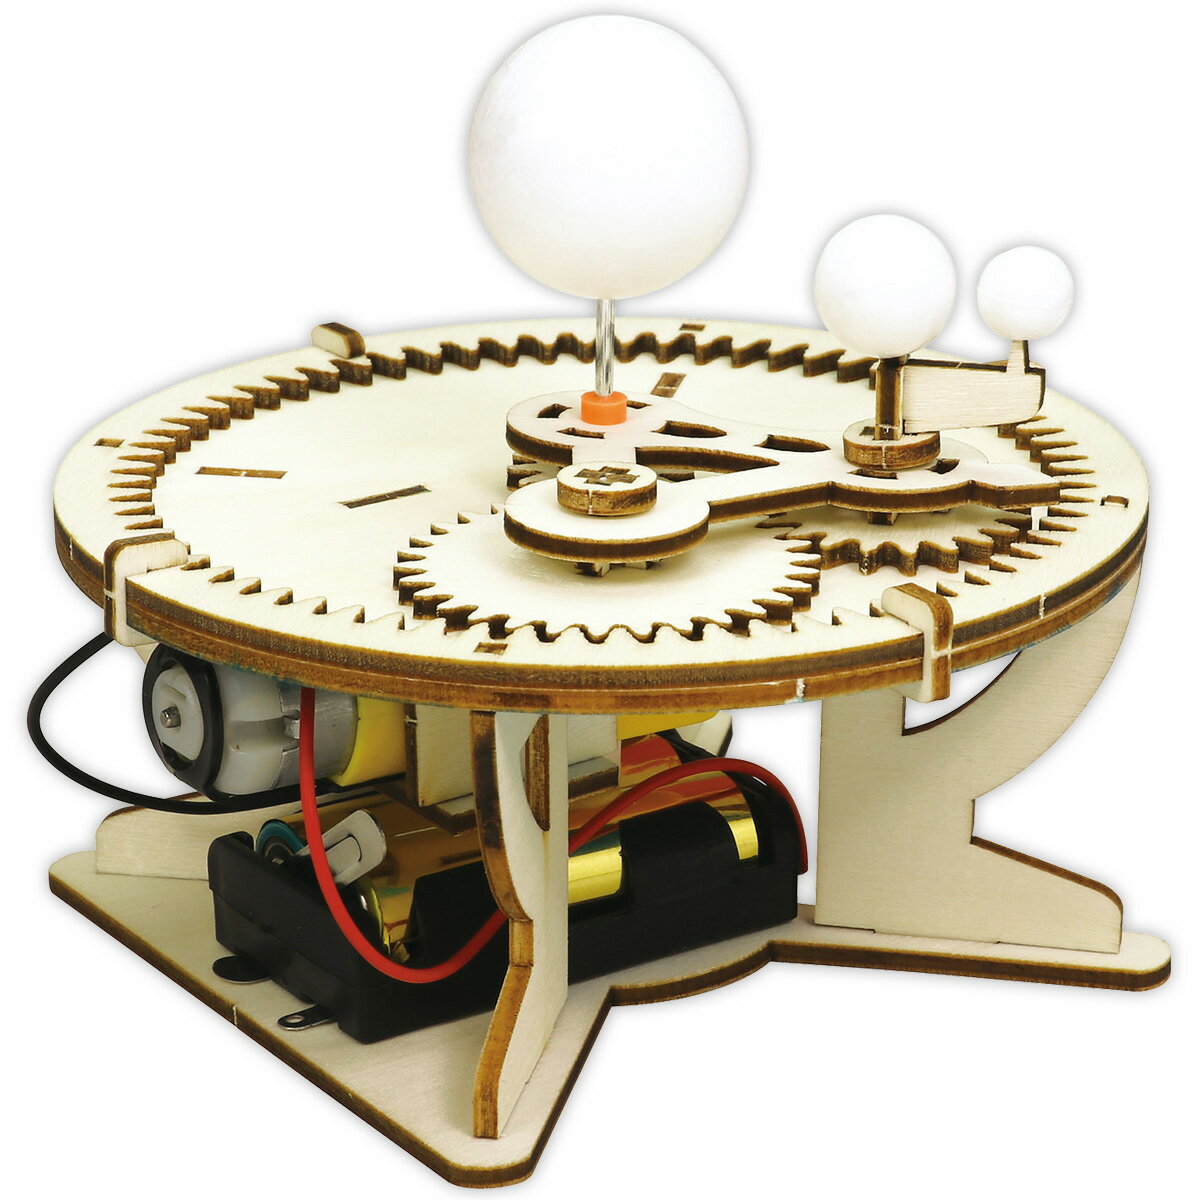 工作キット 三球儀組立キット 地球儀 手作りキット 電動 惑星 模型 動く 理科 子供 科学 位置 勉強 学習 天体 小学生 高学年 自由研究 室内 おもちゃ